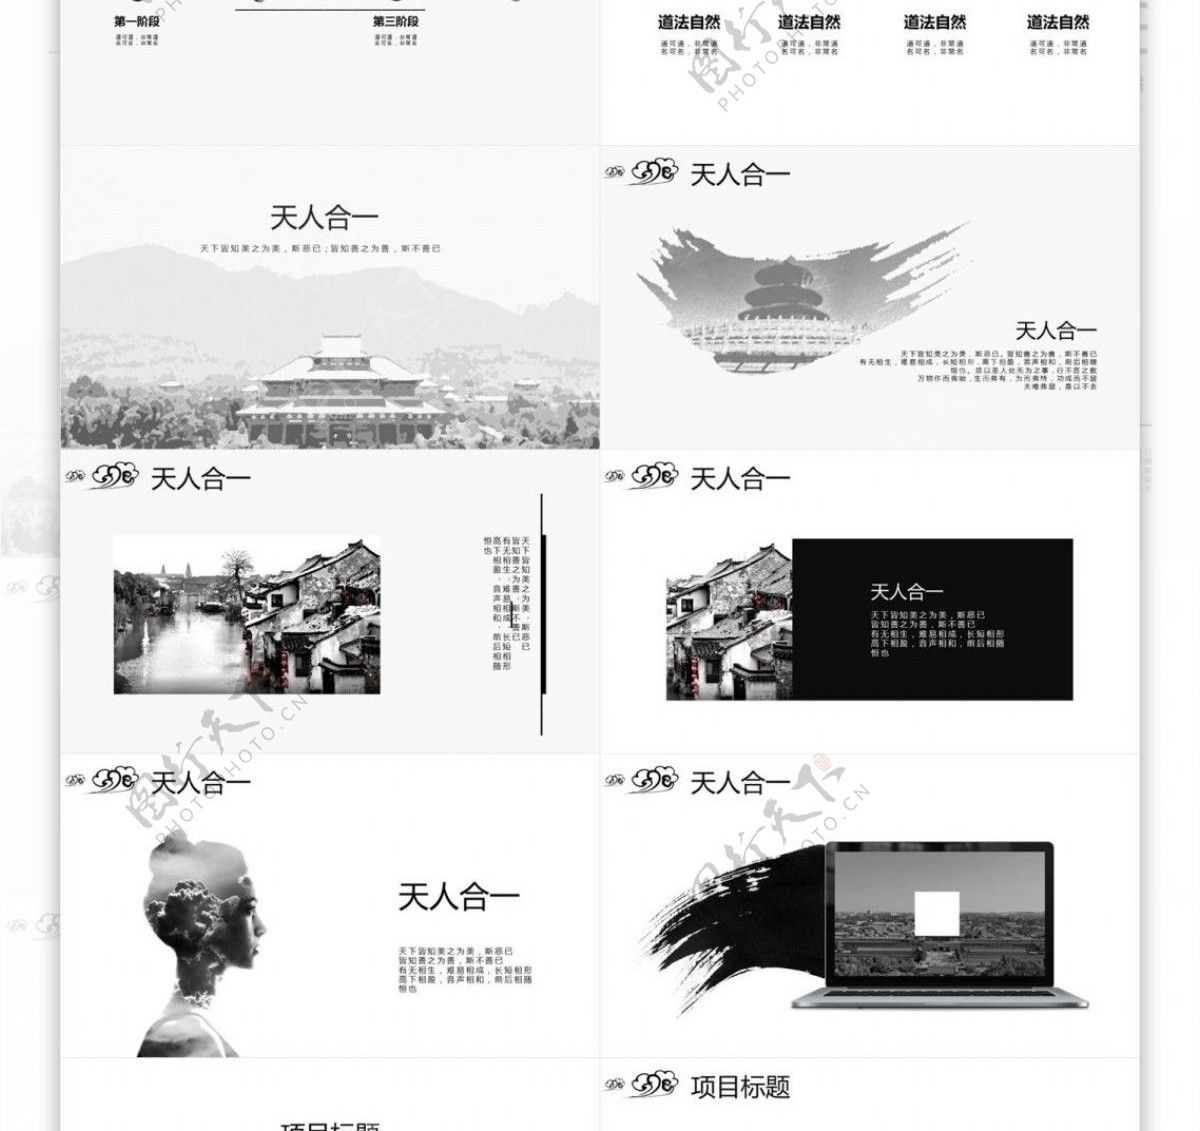 简约高端水墨中国风品牌宣传推广PPT模板